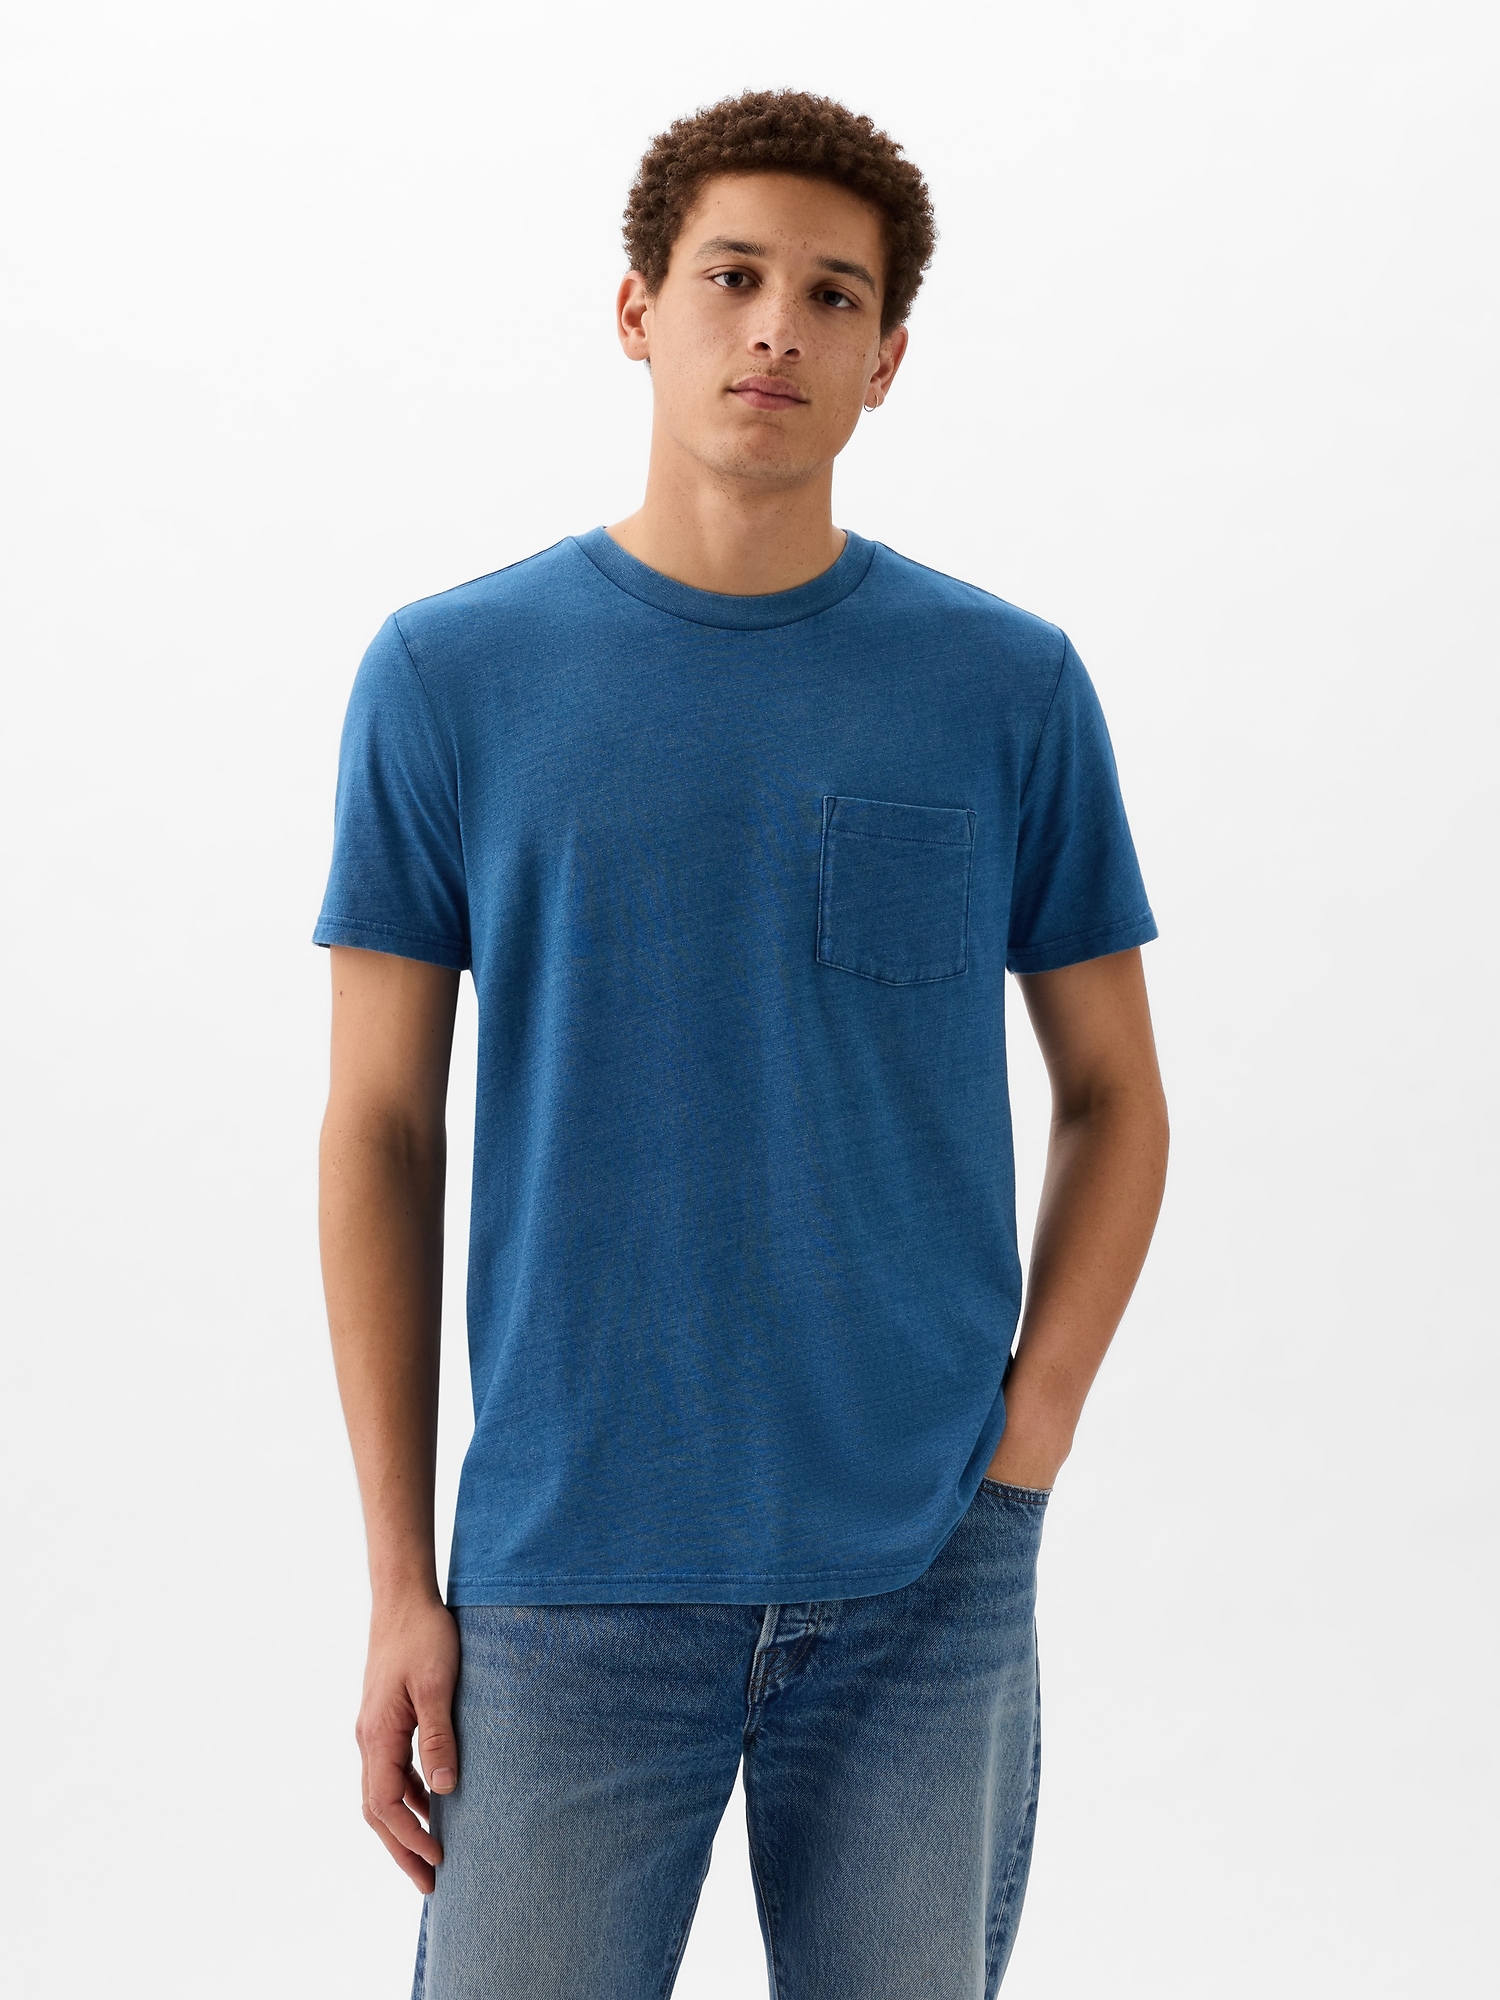 Gap Organic Cotton Pocket T-shirt In Medium Indigo